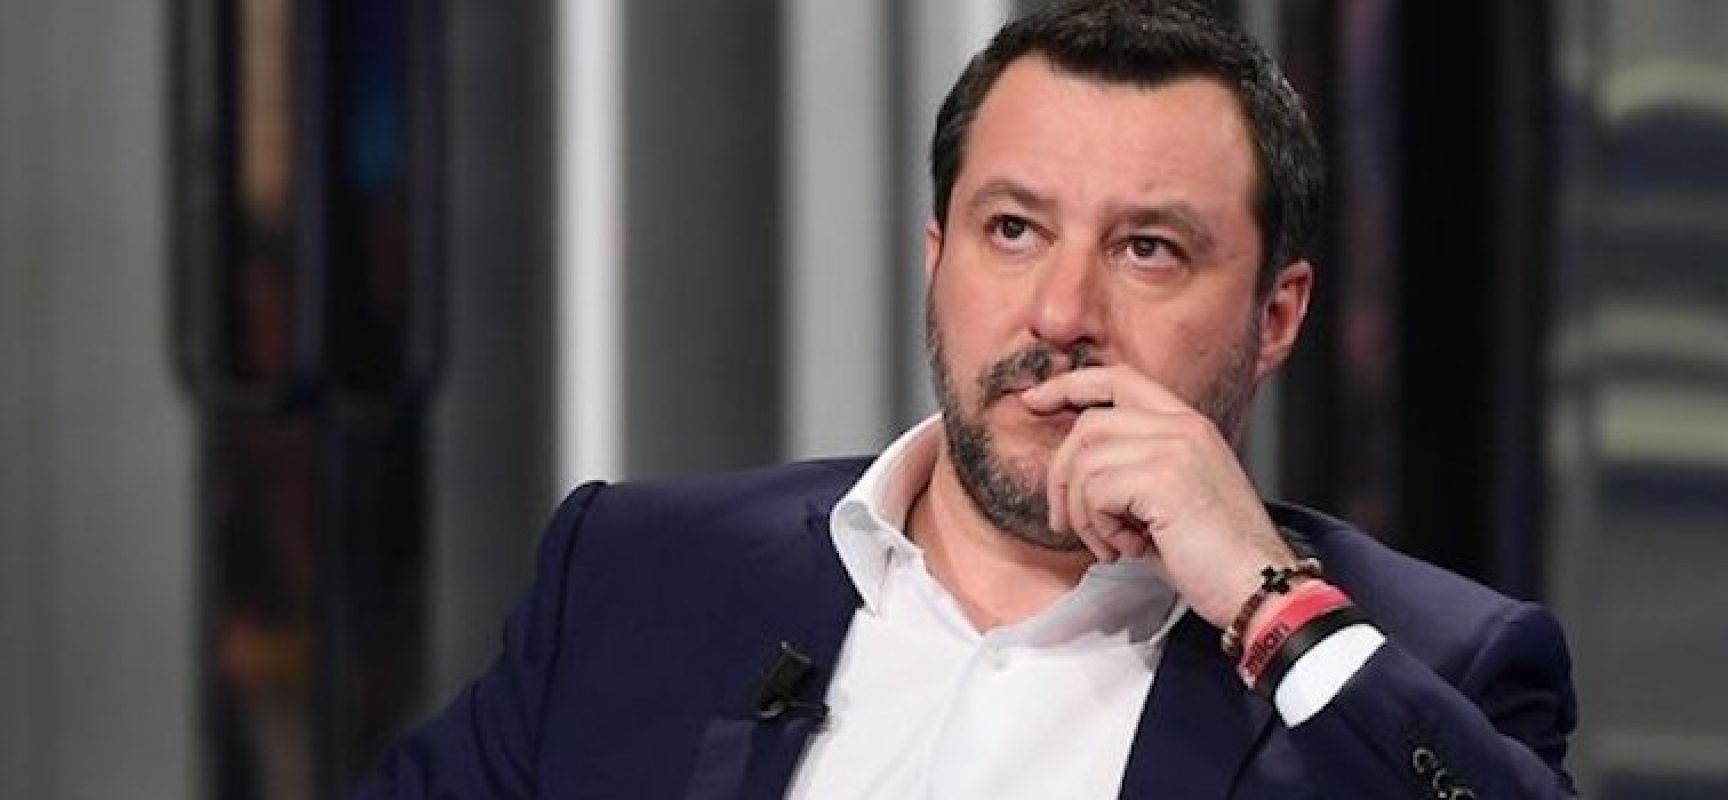 Matteo Salvini si congratula con i ragazzi della “Monterisi” per lettera contro Junior Cally